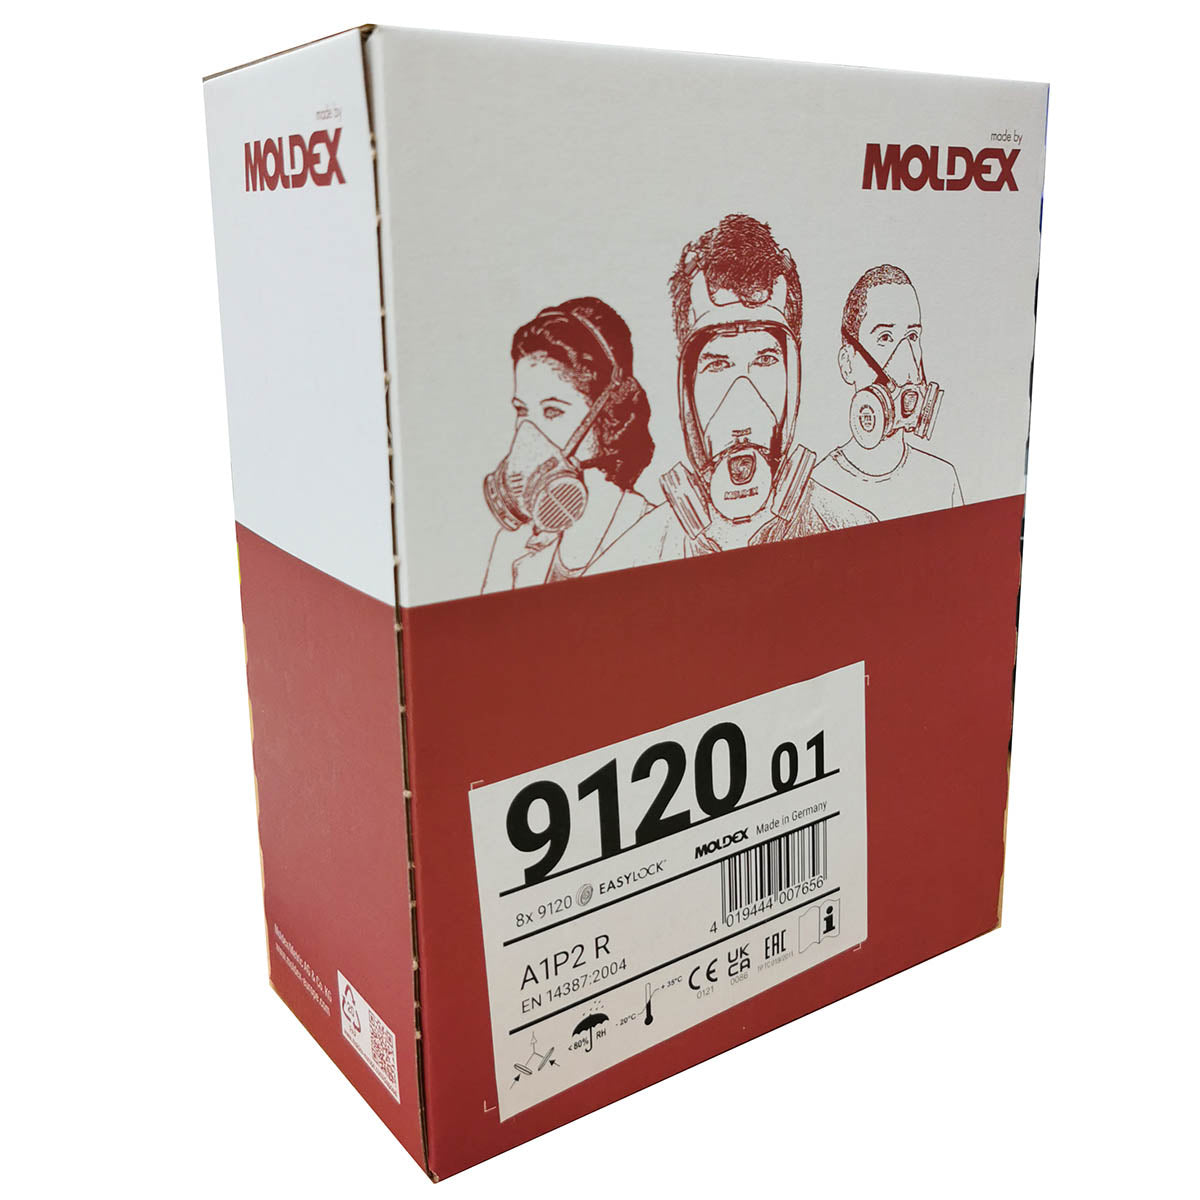 MOLDEX 9120 - A1P2 R EasyLock Pre-assembled Filters